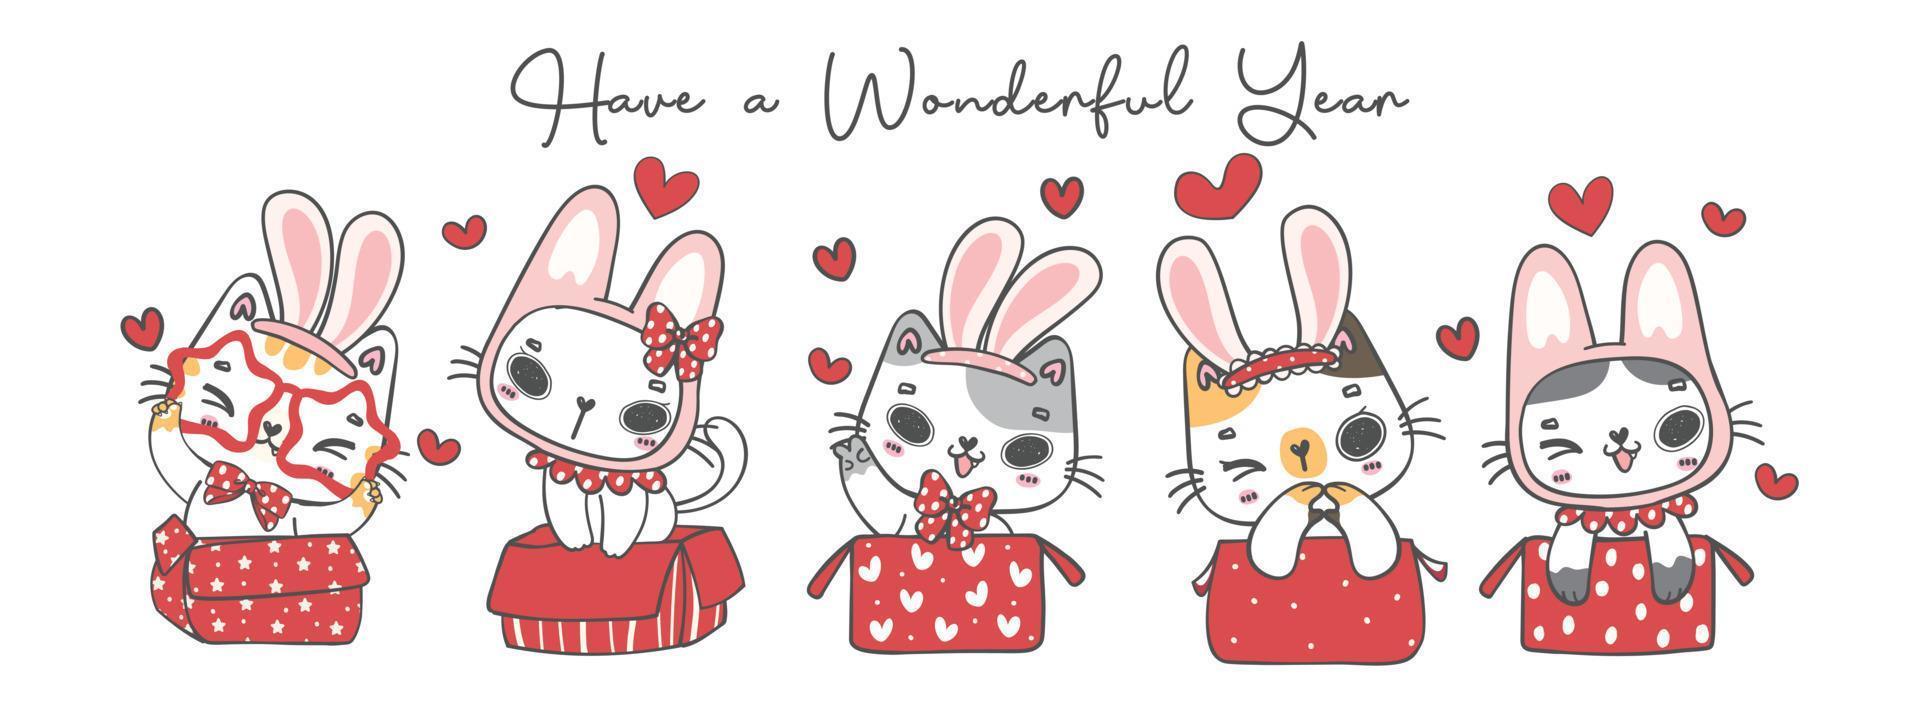 grupo de gatitos kawaii usan orejas de conejo, en cajas rojas, tienen un año maravilloso, personaje de dibujos animados mascota animal garabato dibujo a mano ilustración vector